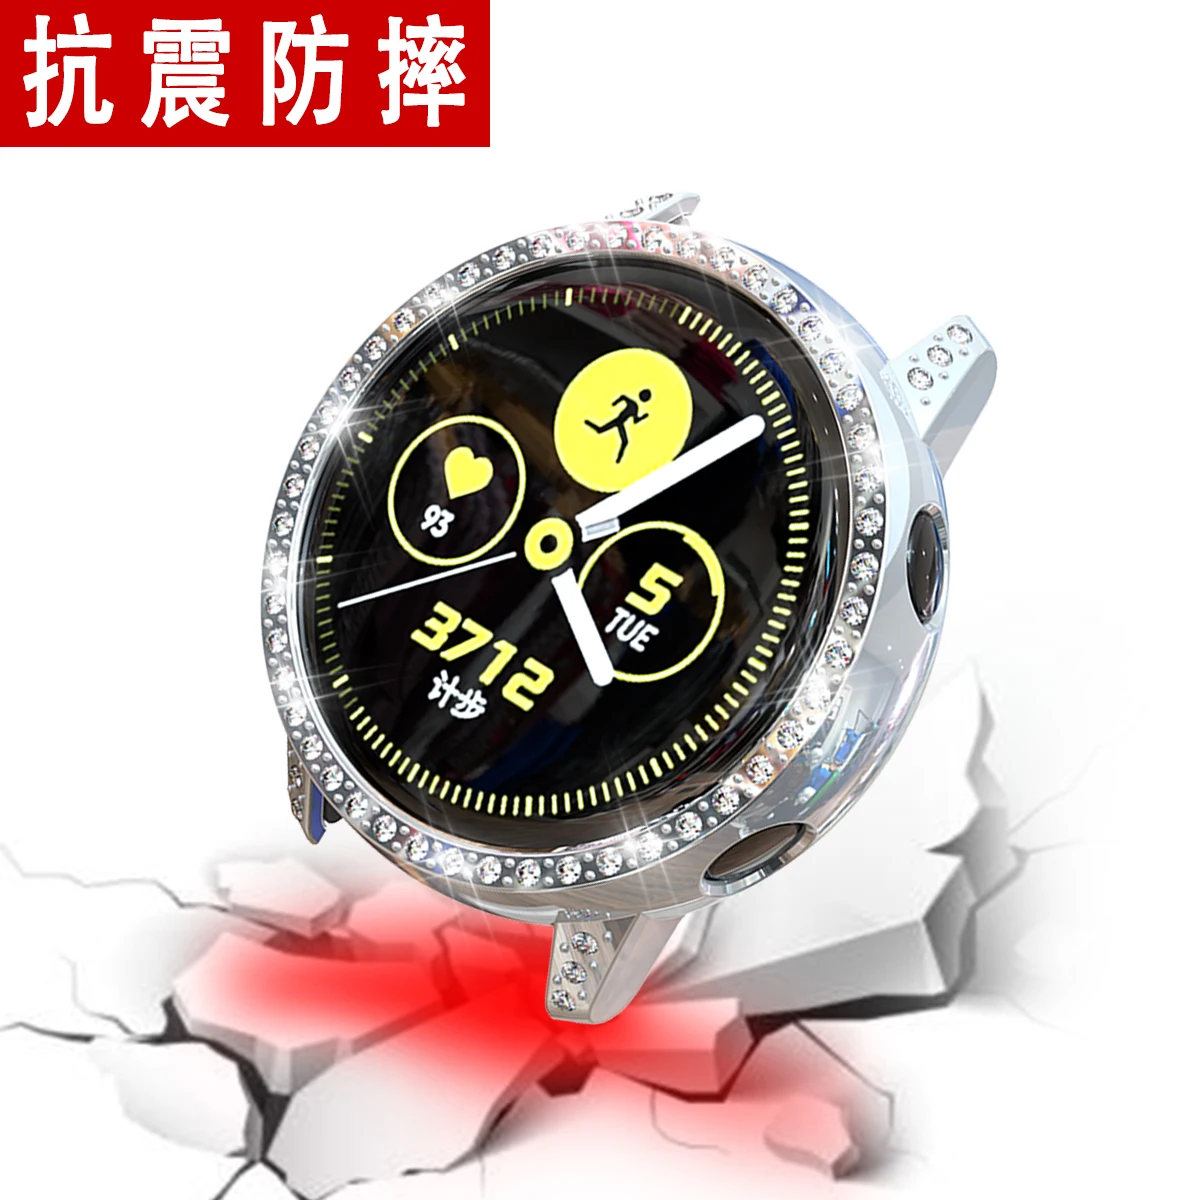 Чехол для samsung Galaxy Watch Active Bumper Shell Bling Diamond Frame Жесткий PC защитный чехол ремешок для часов аксессуары для ремешка